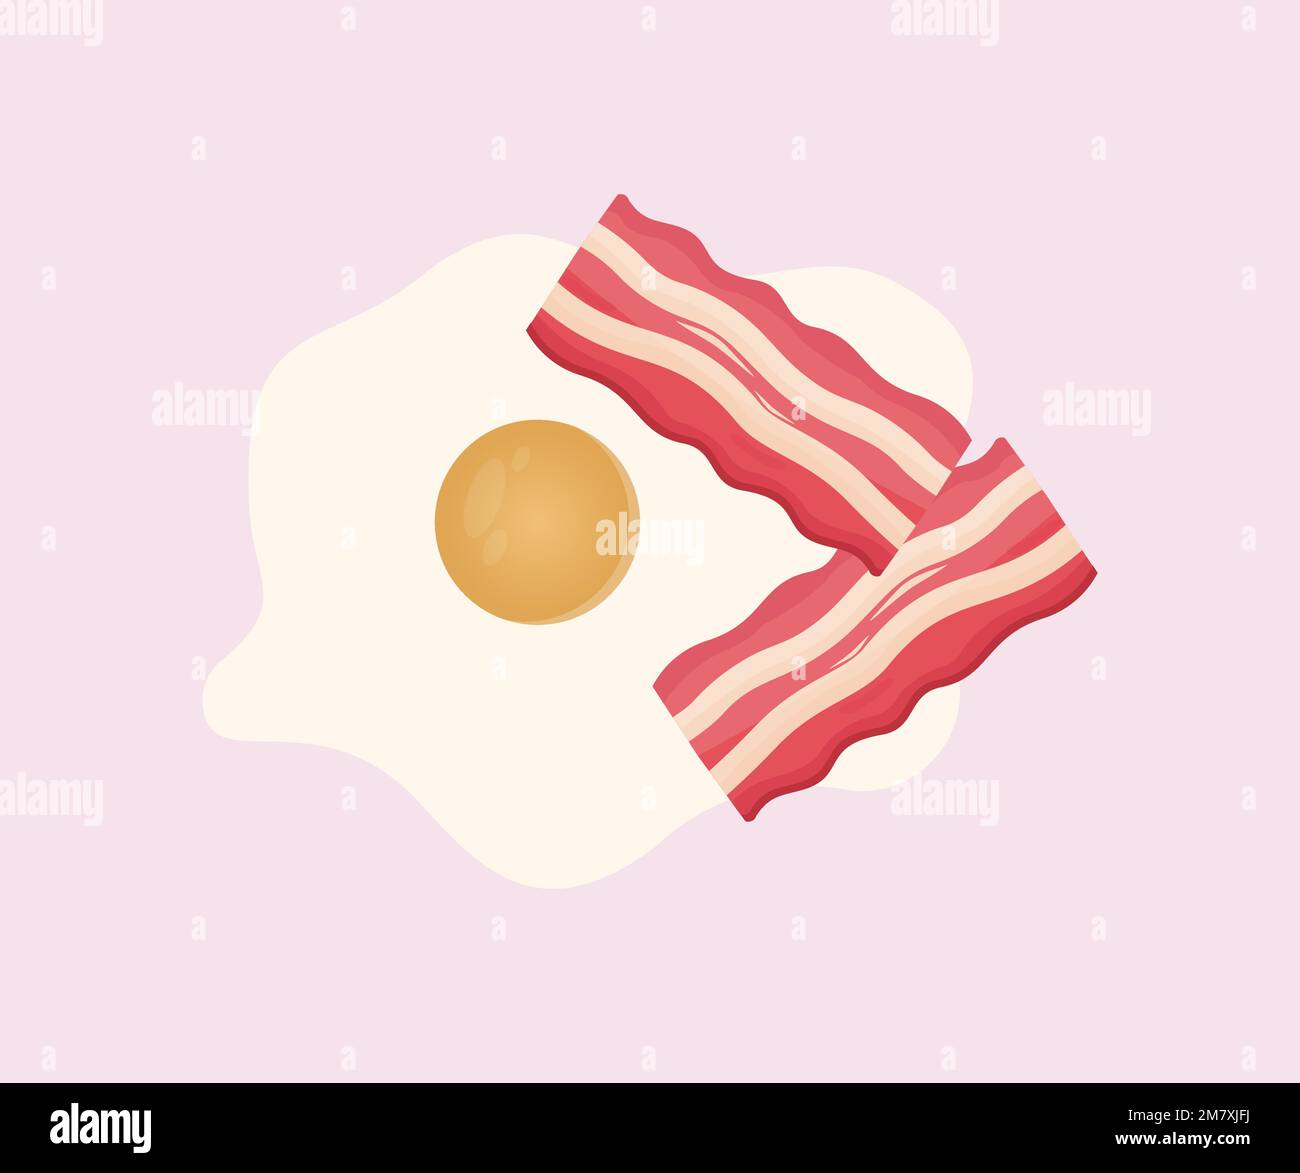 Uova fritte e pancetta per la colazione, sana prima colazione logo design. Disegno e illustrazione vettoriale di bacon e uova classici. Illustrazione Vettoriale